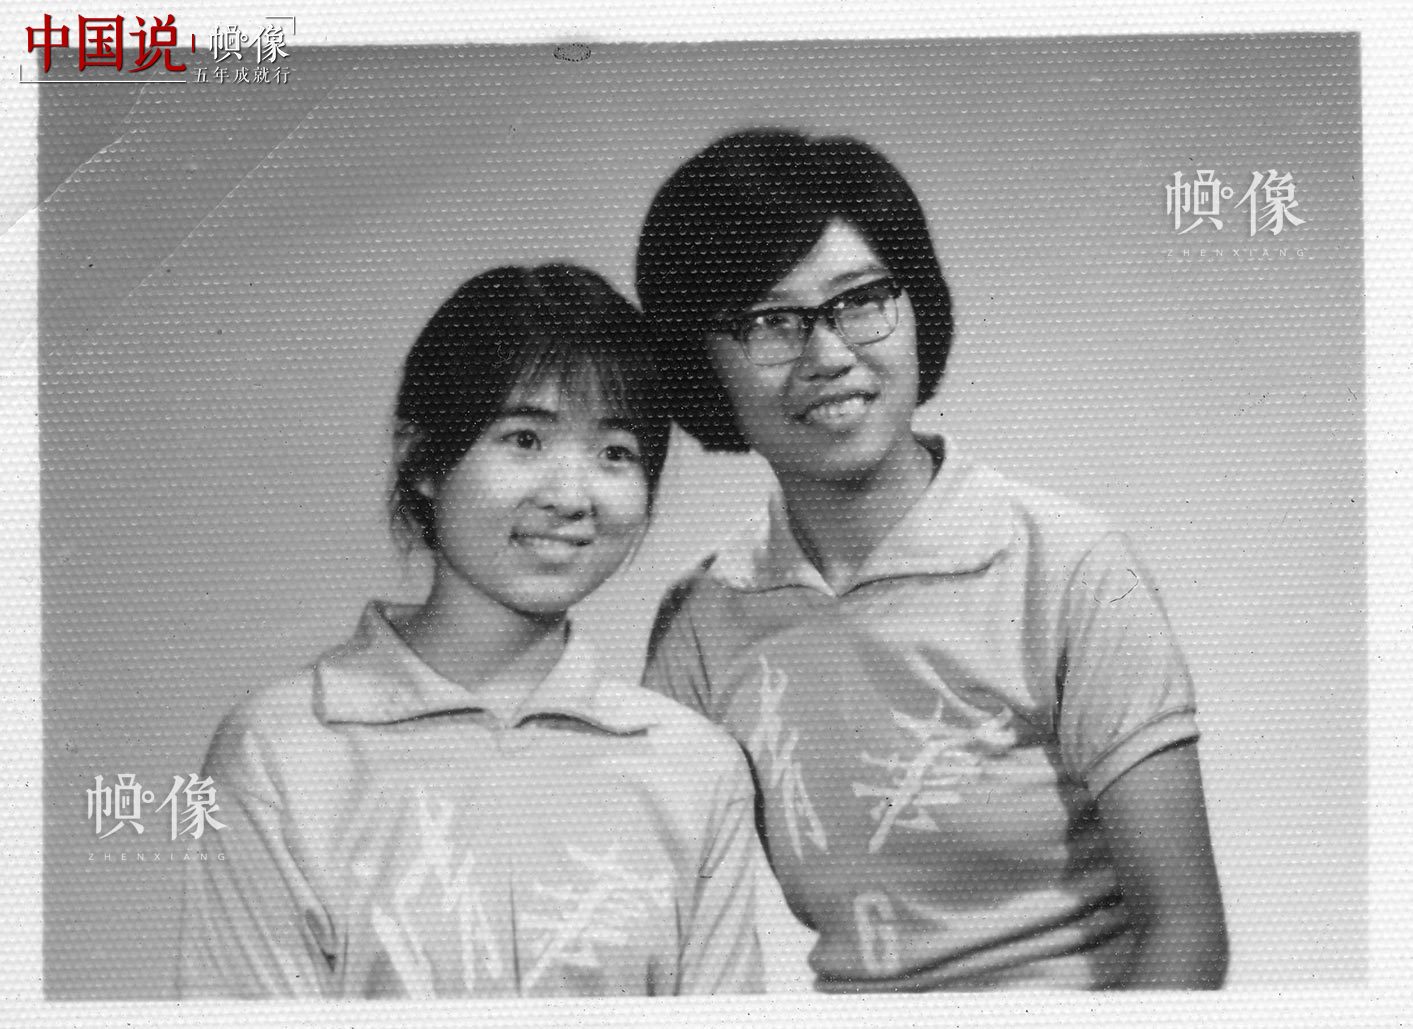 清华大学1977级自动化系学生韩景阳与排球队同学合影。